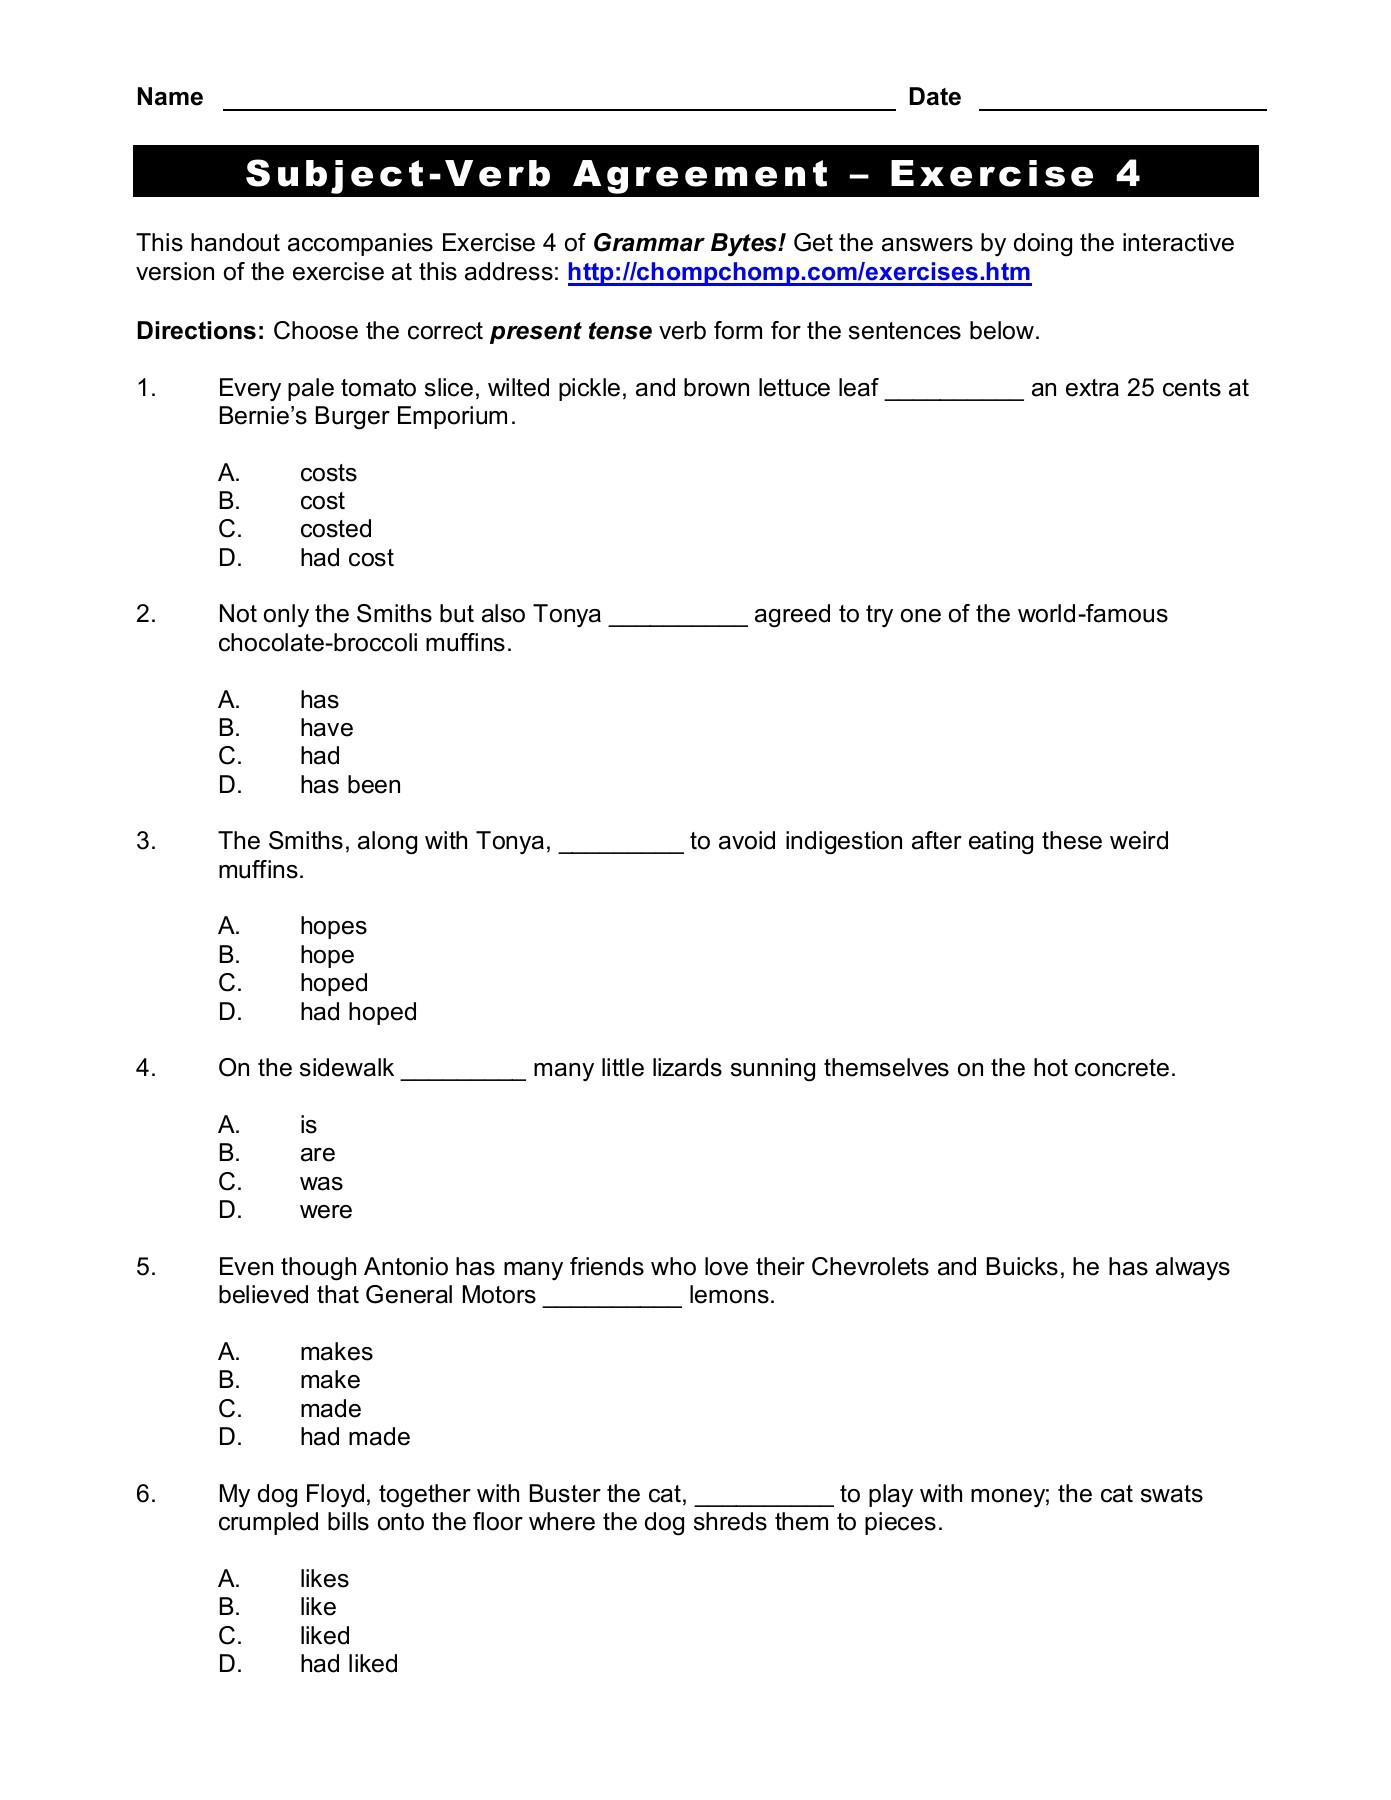 reading-exercises-upper-intermediate-level-worksheet-resume-examples